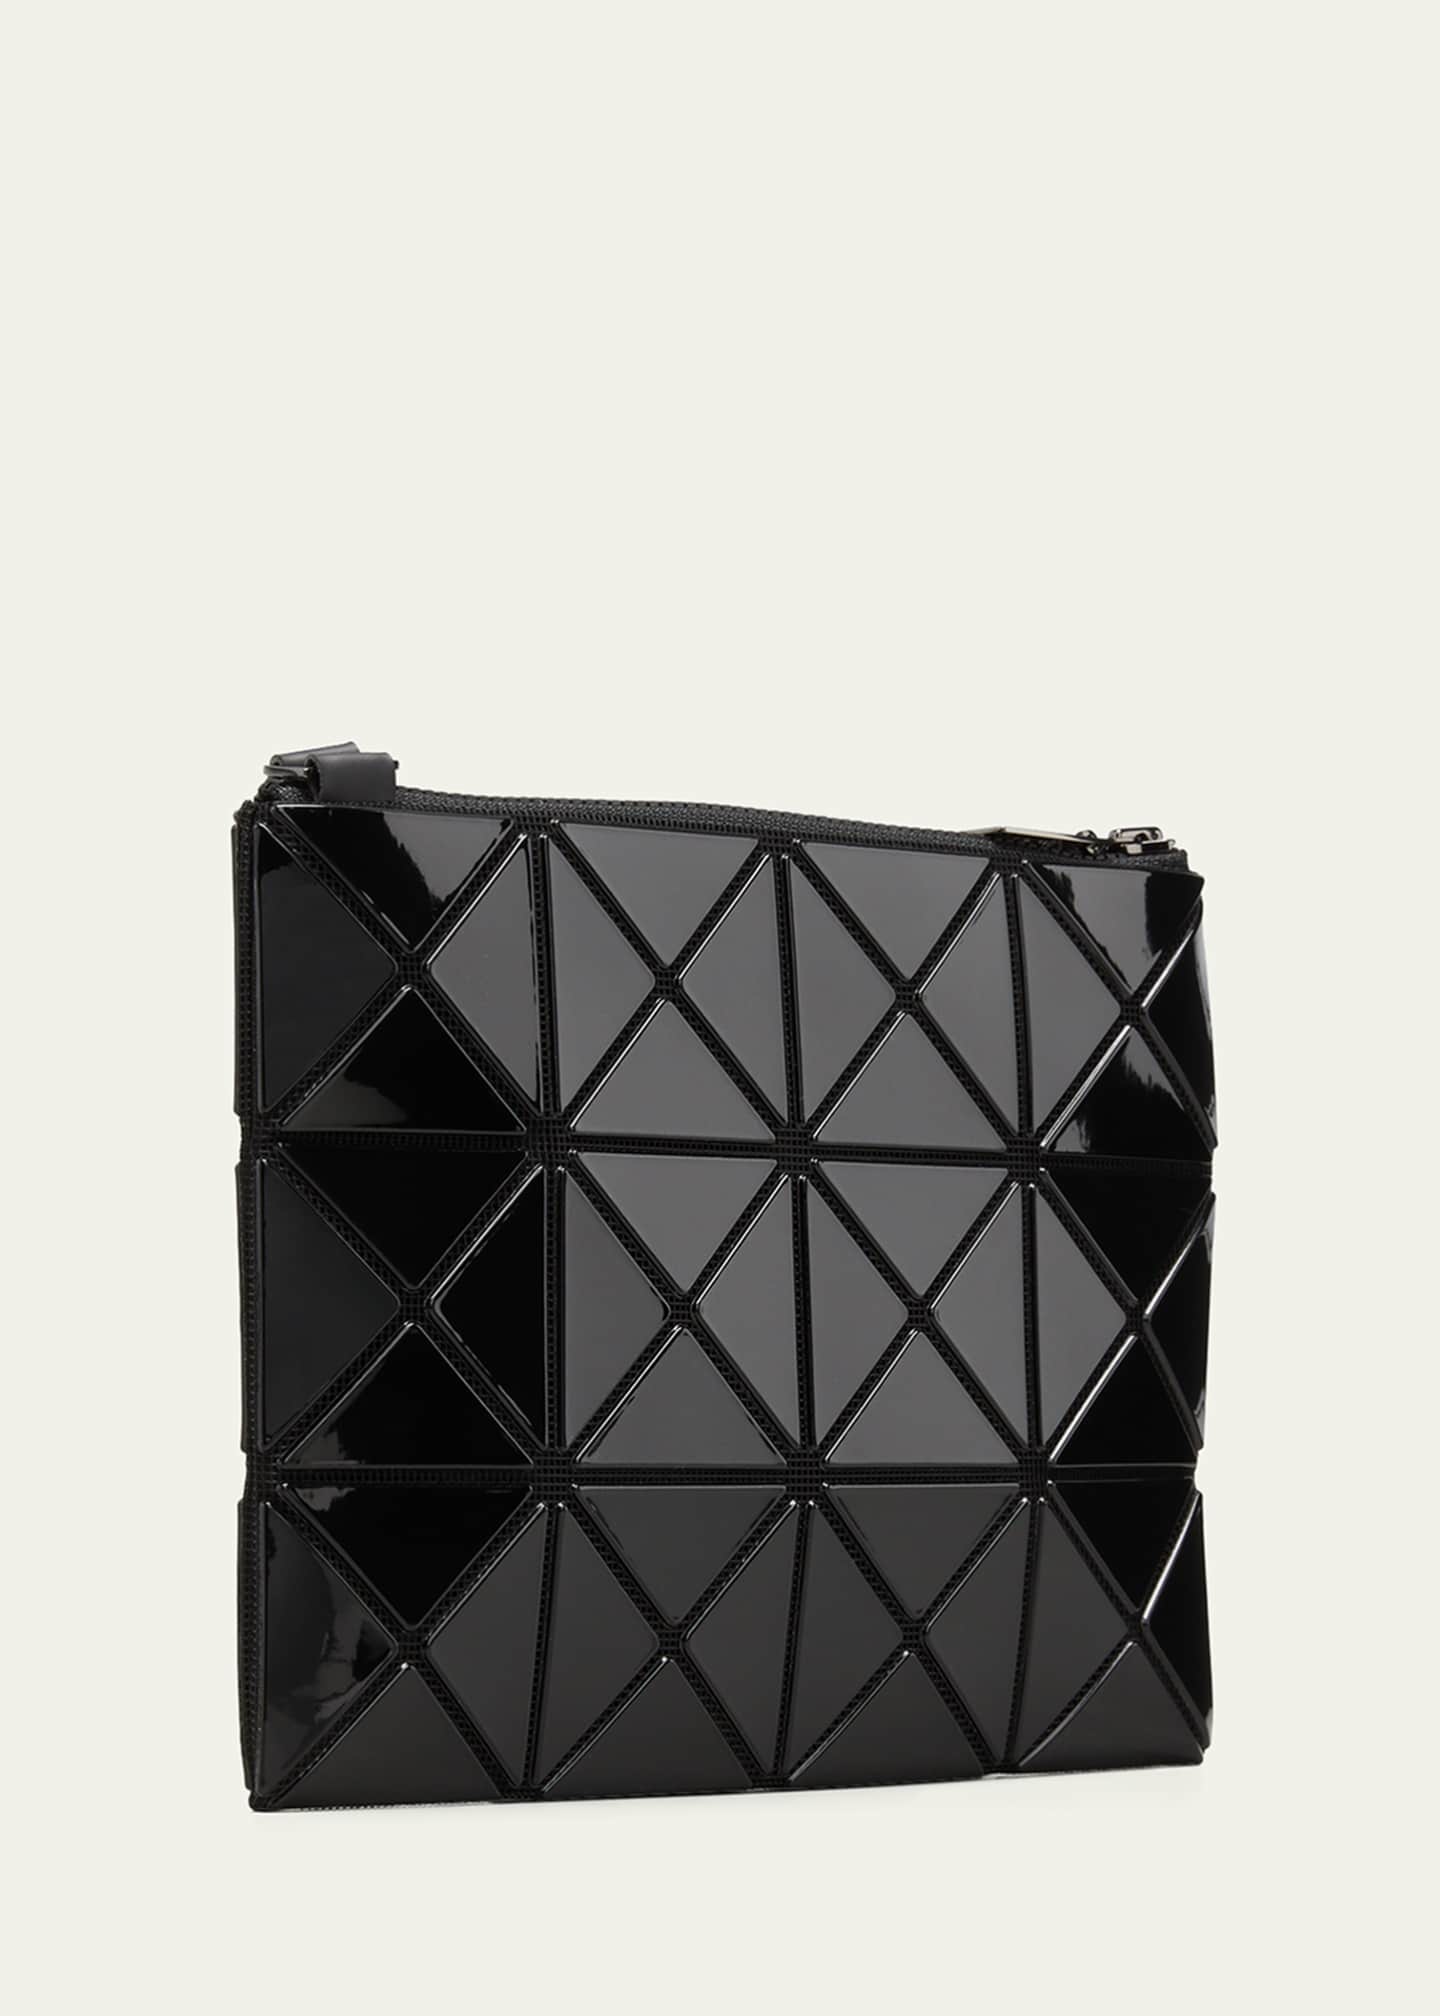 BAO BAO ISSEY MIYAKE Lucent Geo Tile Crossbody Clutch Bag Image 3 of 5